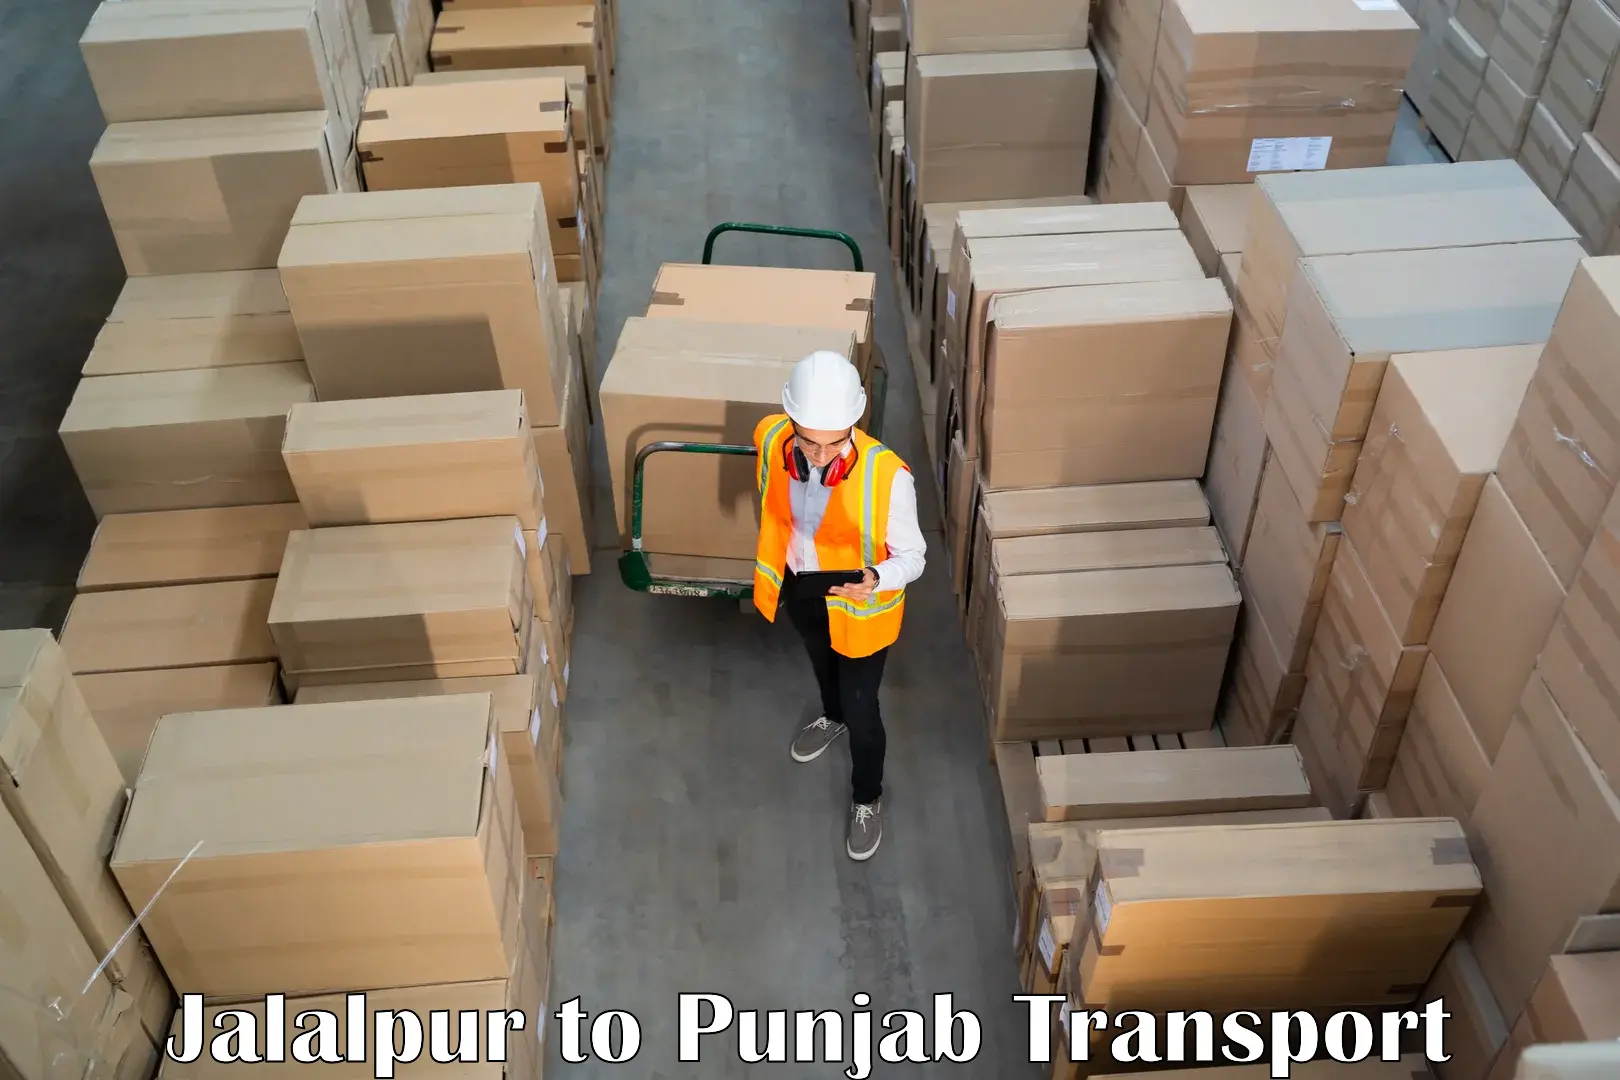 Delivery service Jalalpur to Garhshankar